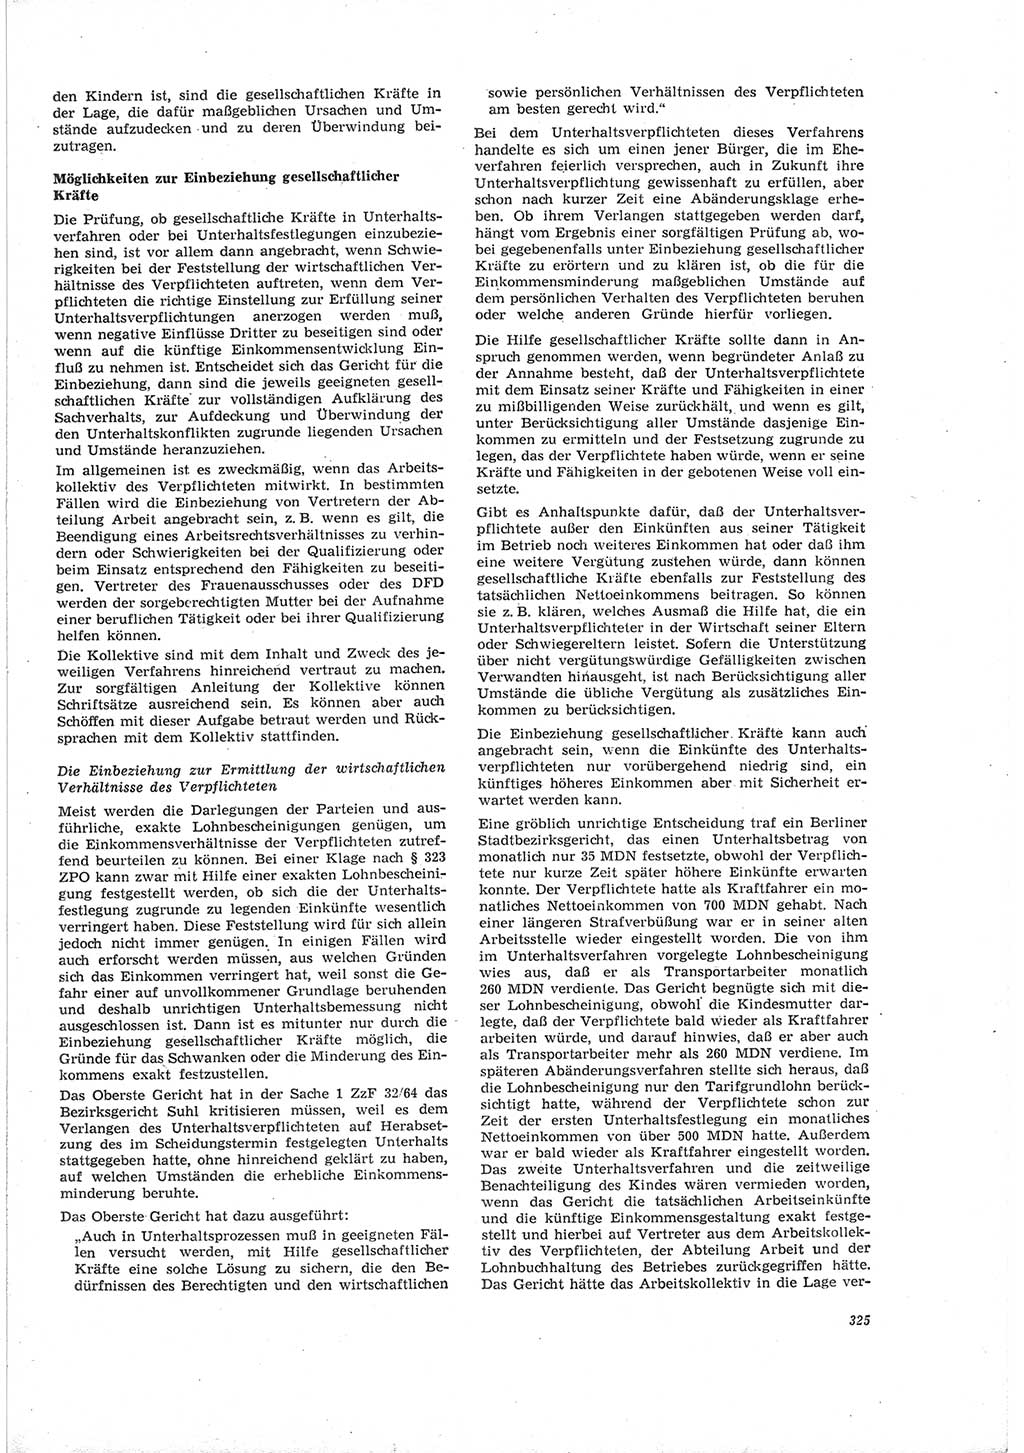 Neue Justiz (NJ), Zeitschrift für Recht und Rechtswissenschaft [Deutsche Demokratische Republik (DDR)], 19. Jahrgang 1965, Seite 325 (NJ DDR 1965, S. 325)